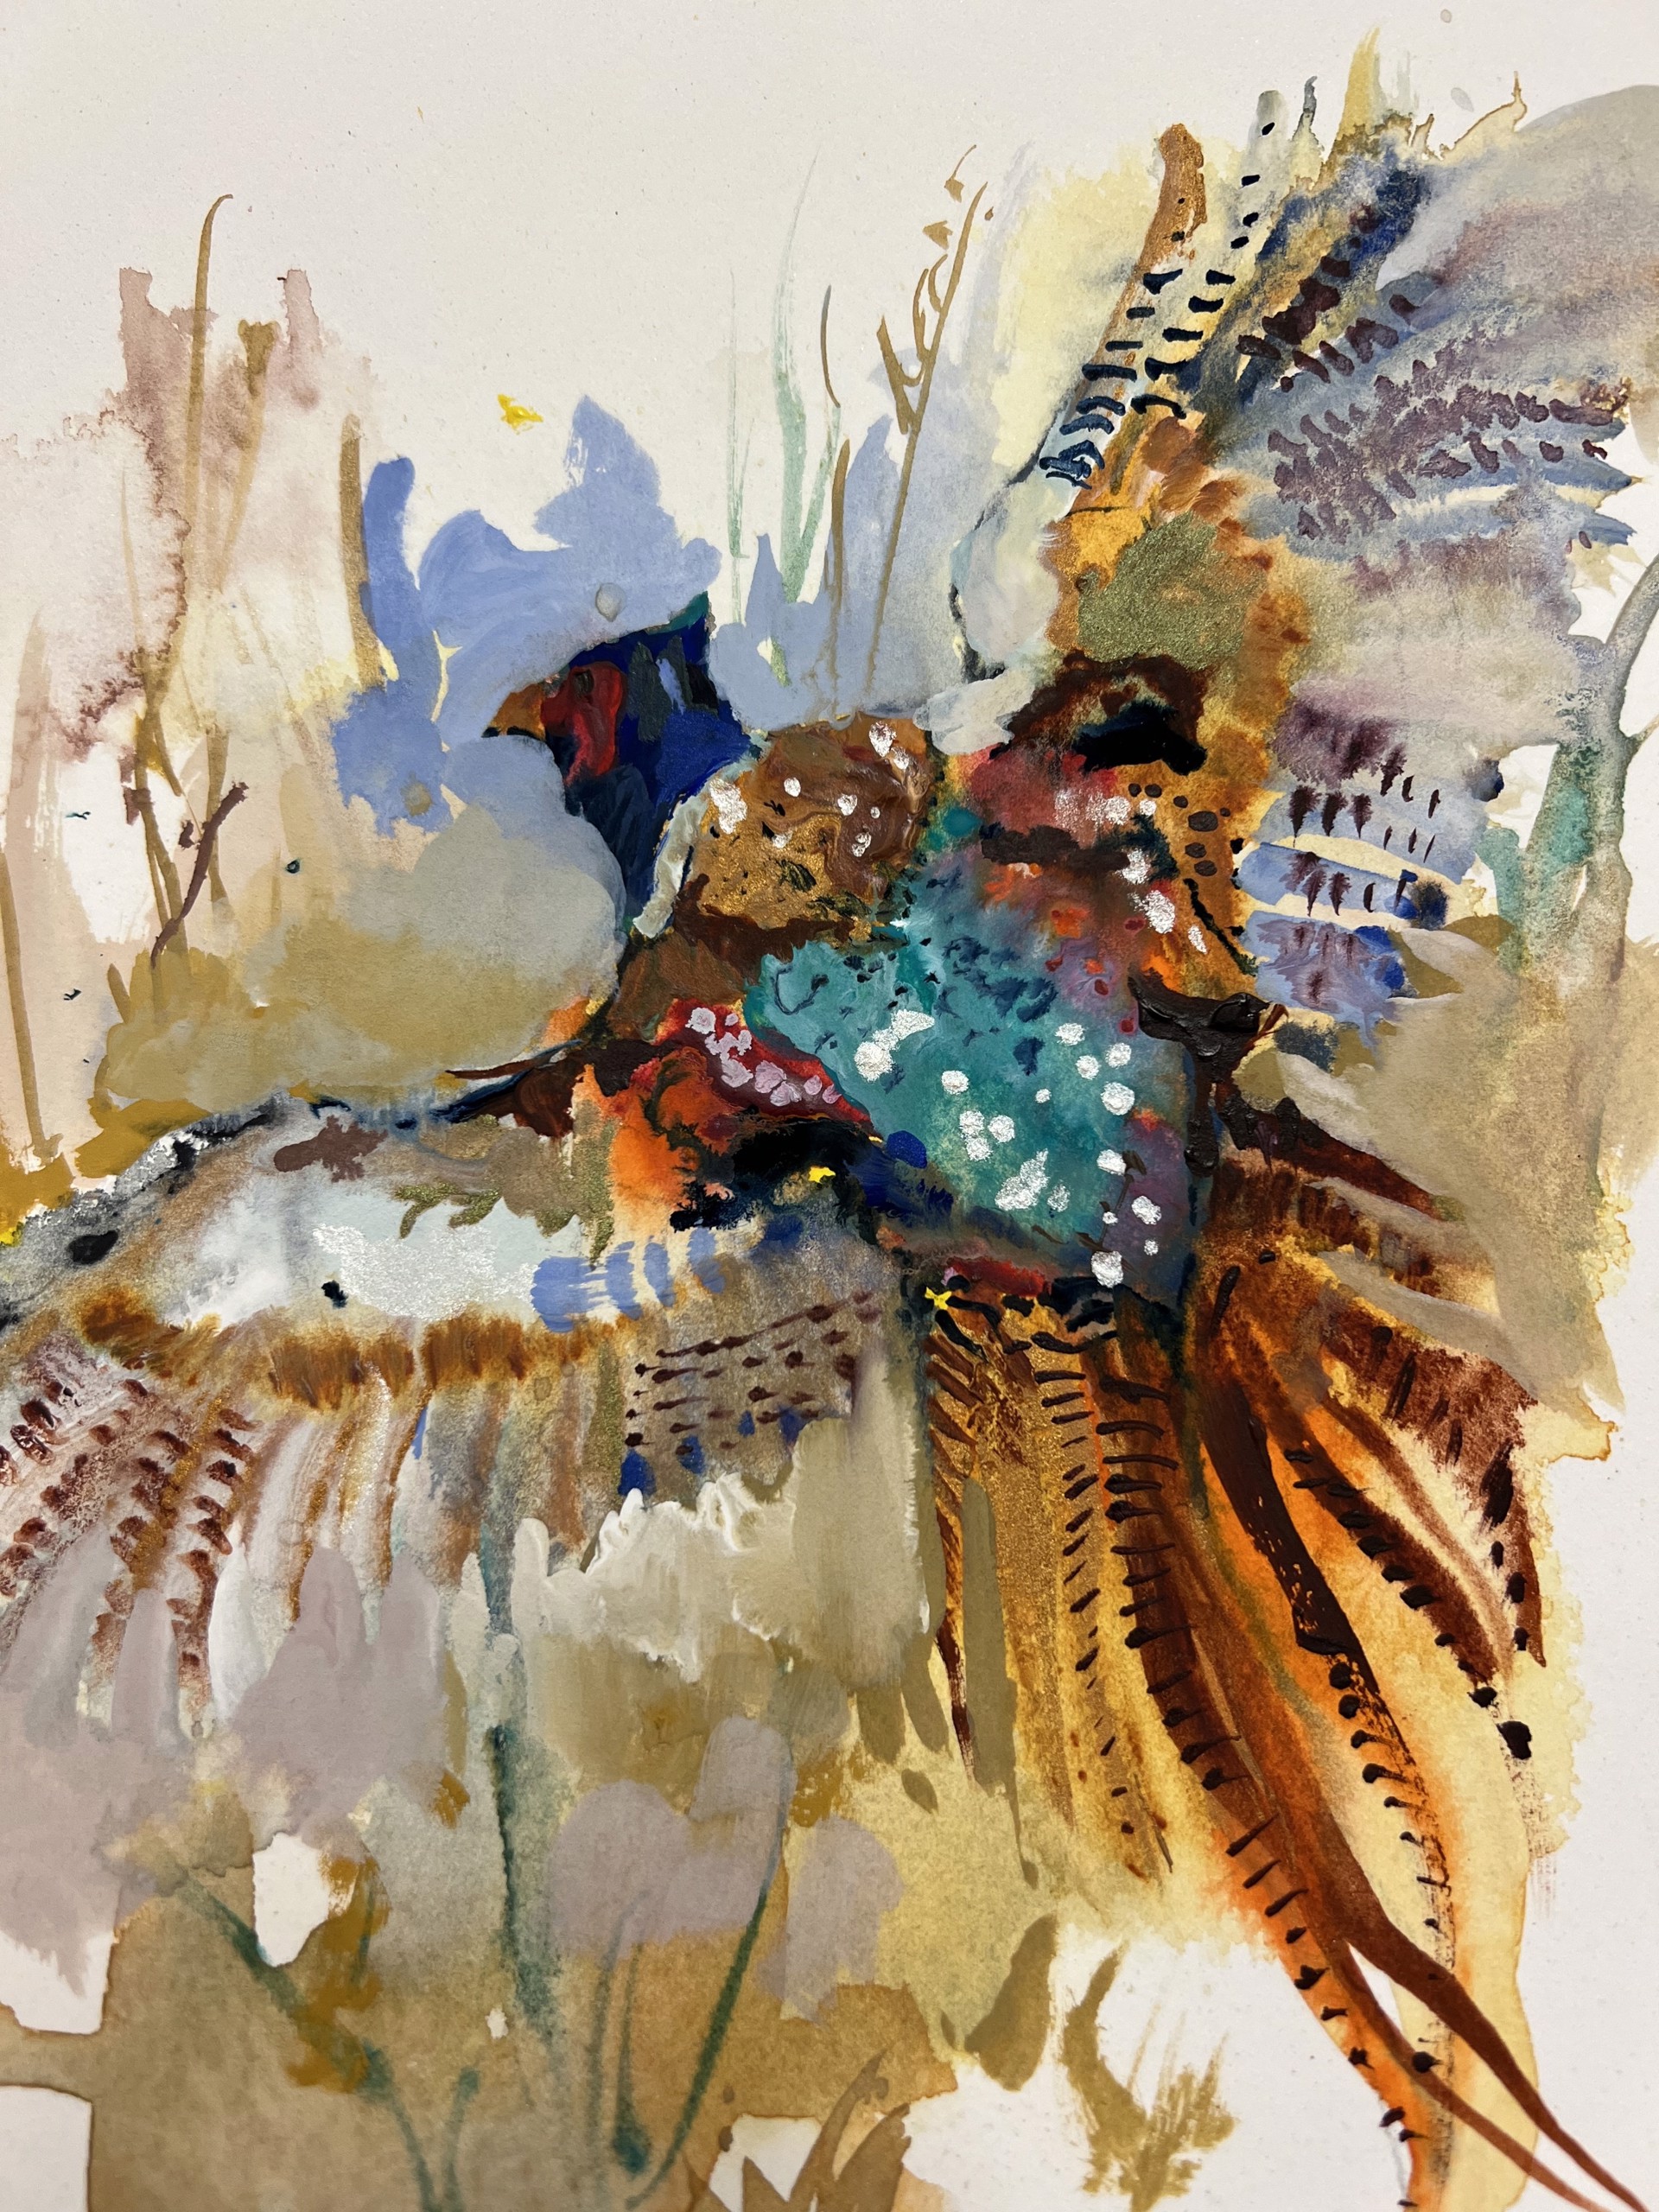 Pheasant by Dirk Walker